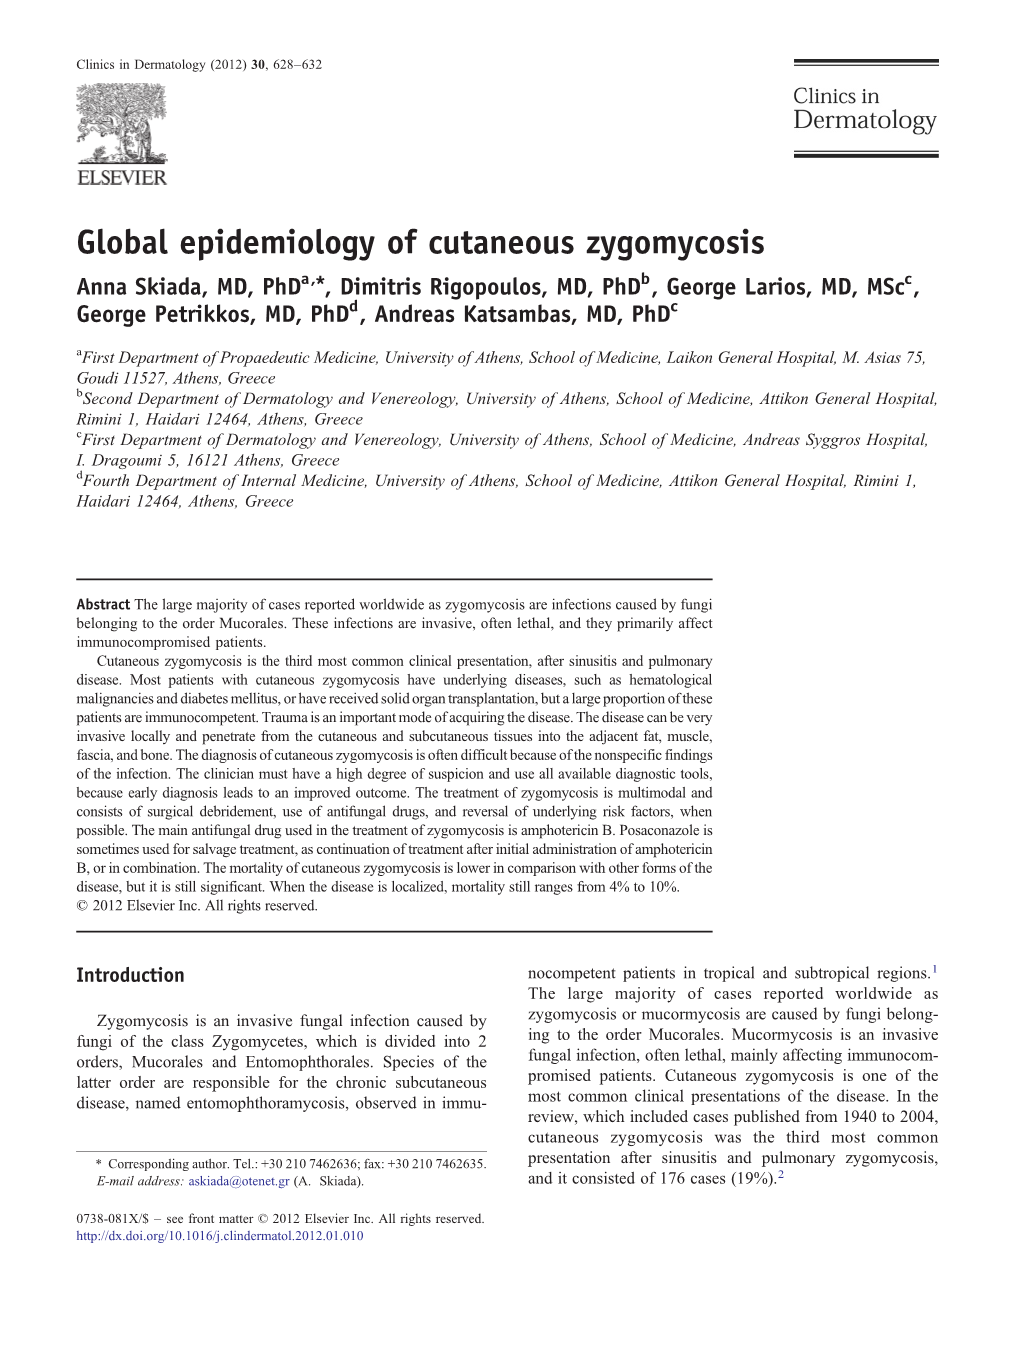 Global Epidemiology of Cutaneous Zygomycosis